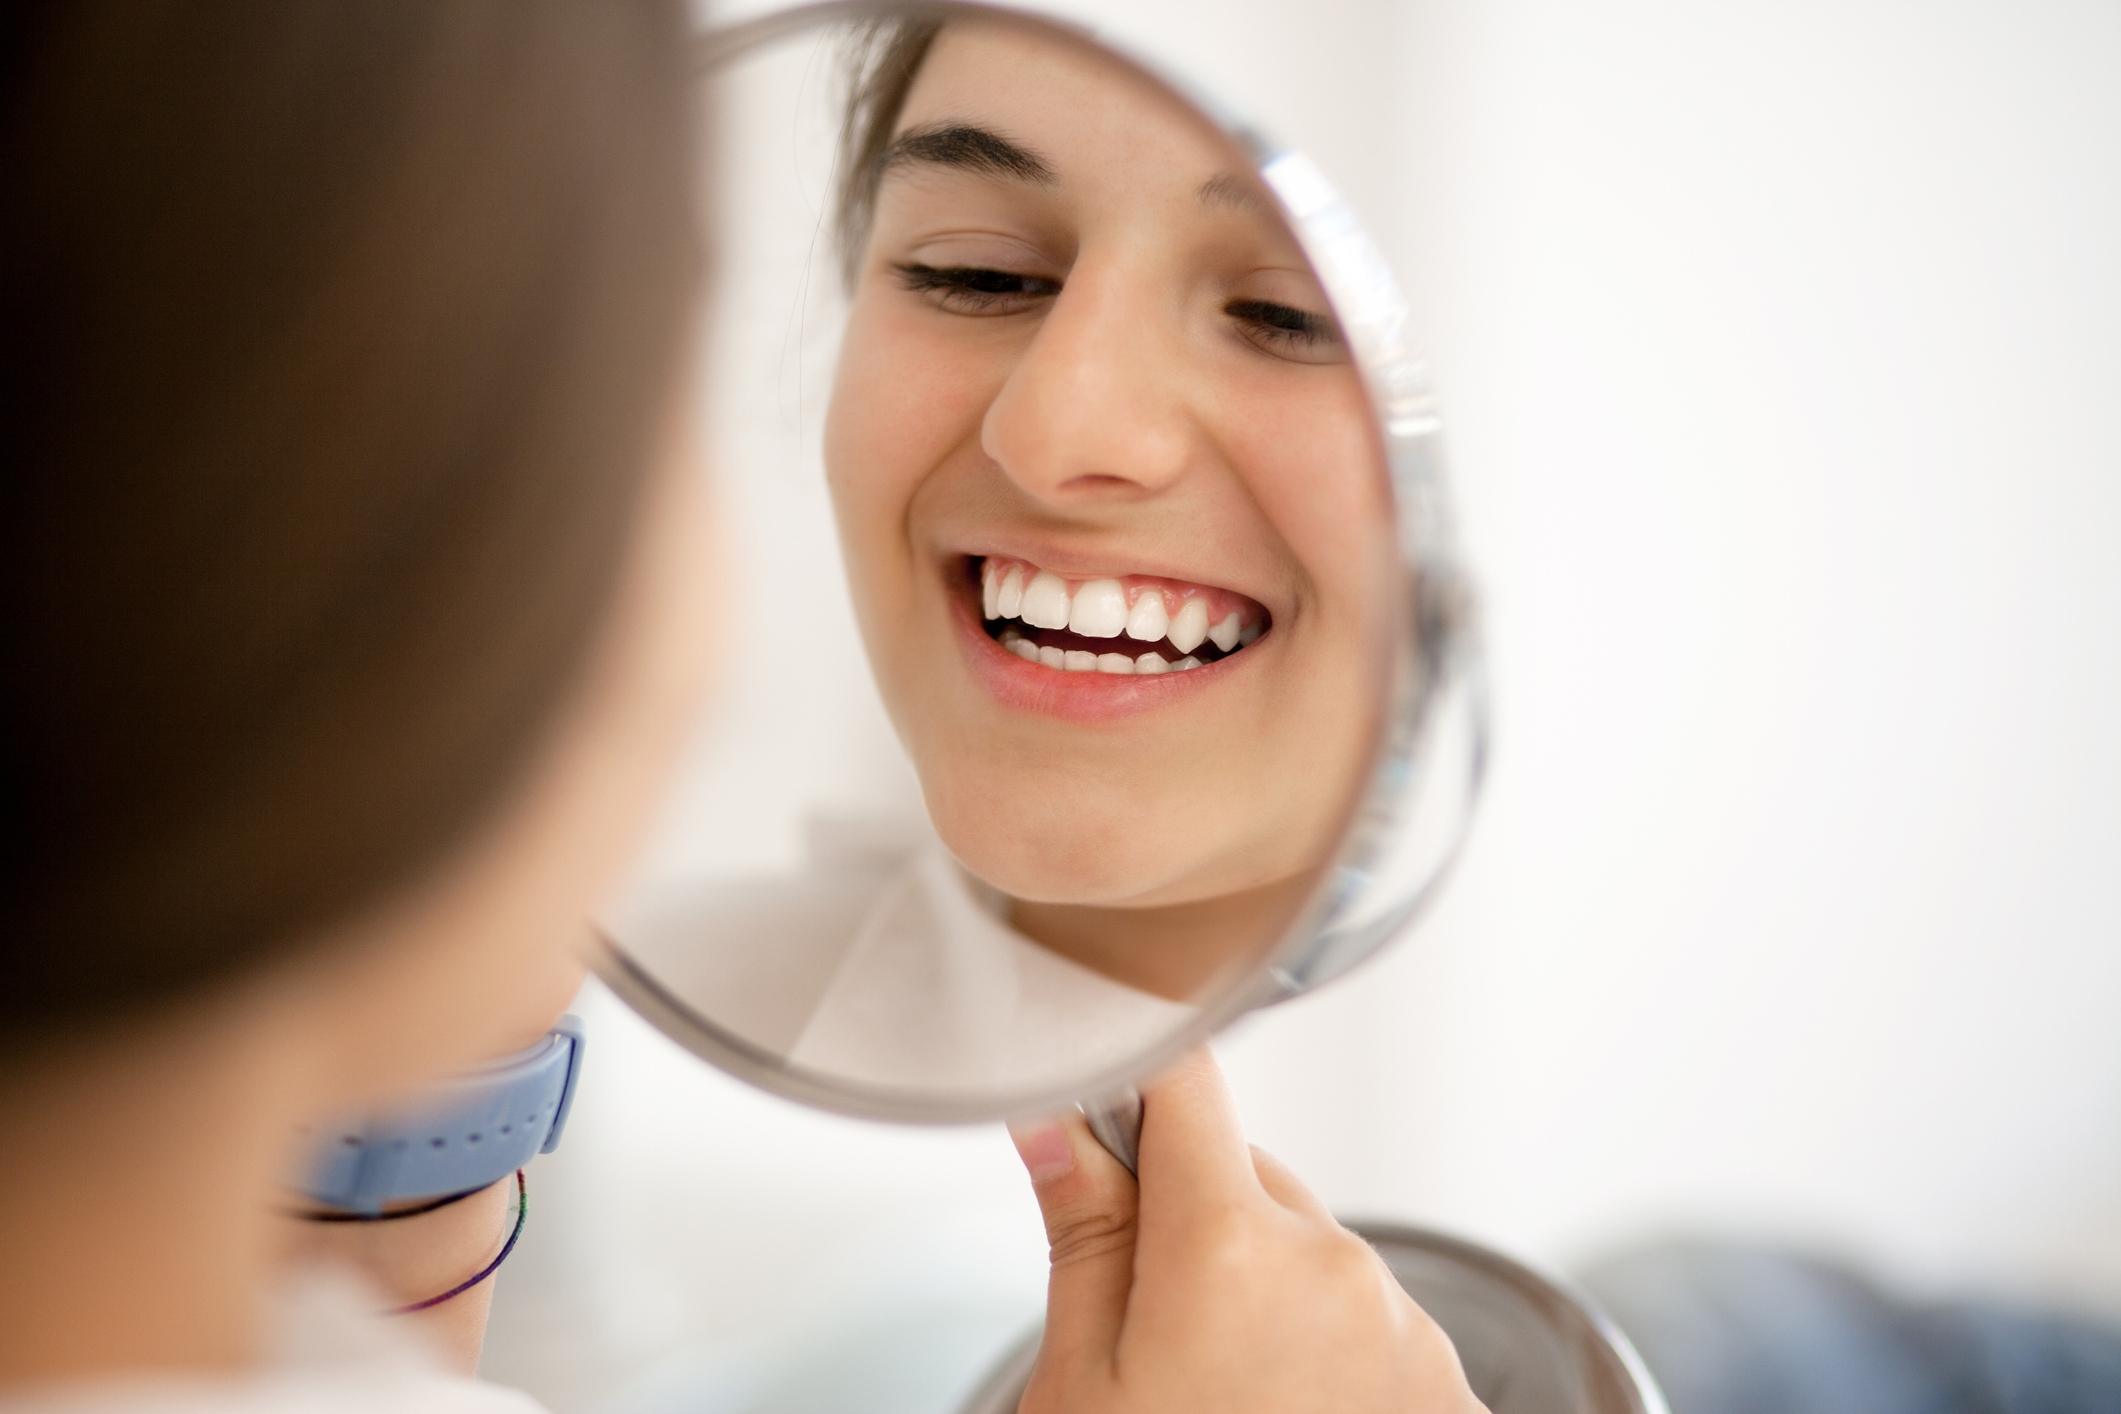 Woman-looking-at-her-teeth-in-the-mirror.jpg